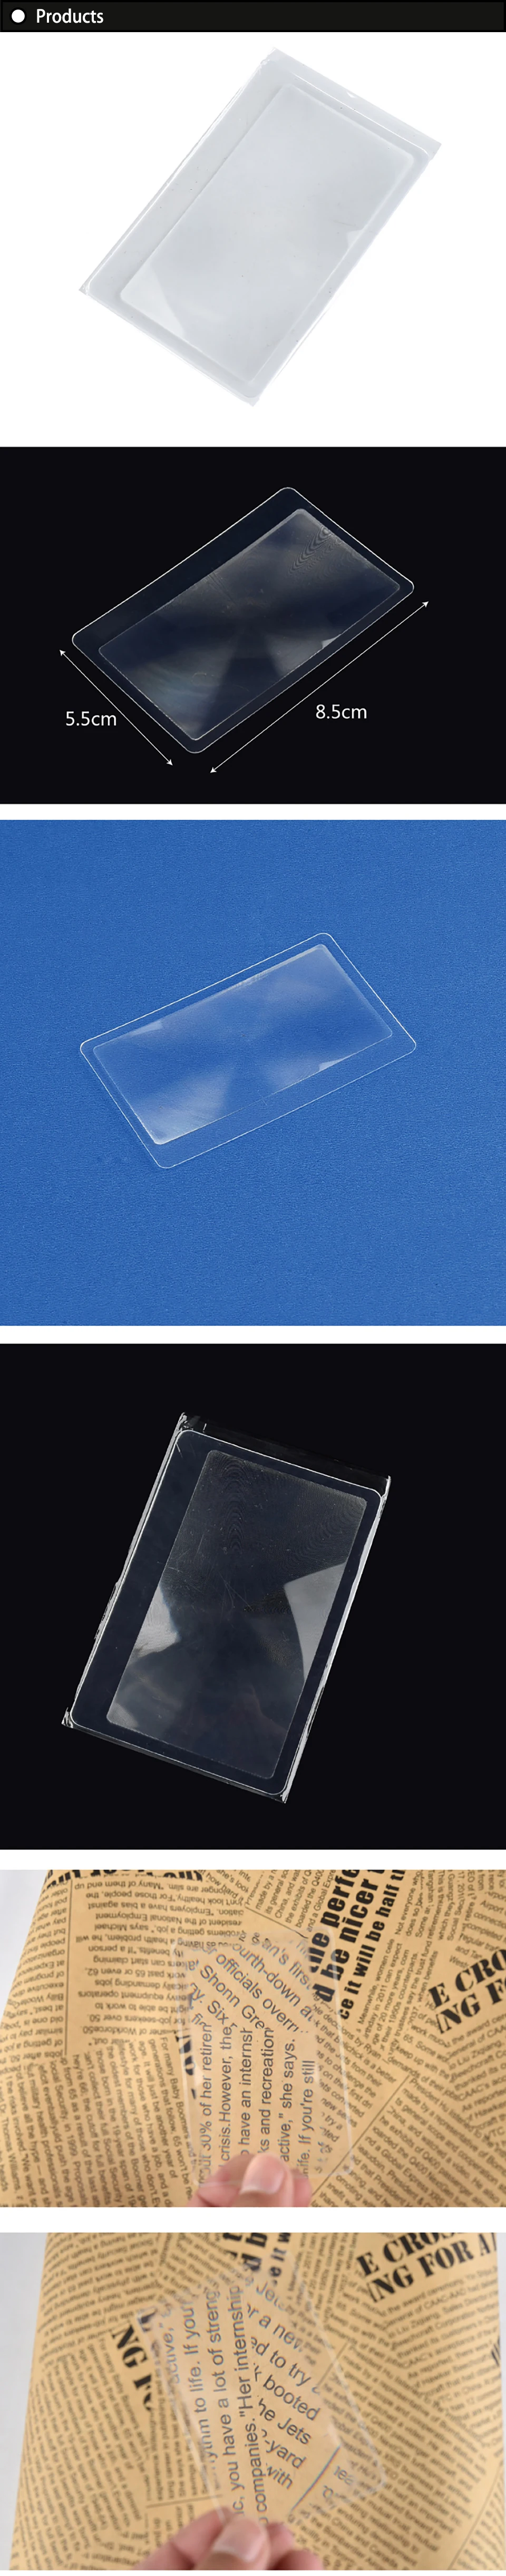 10 шт. размер карты Ультра тонкая Кредитная карта 3 X увеличительное стекло увеличительные стеклянные линзы френеля для чтения